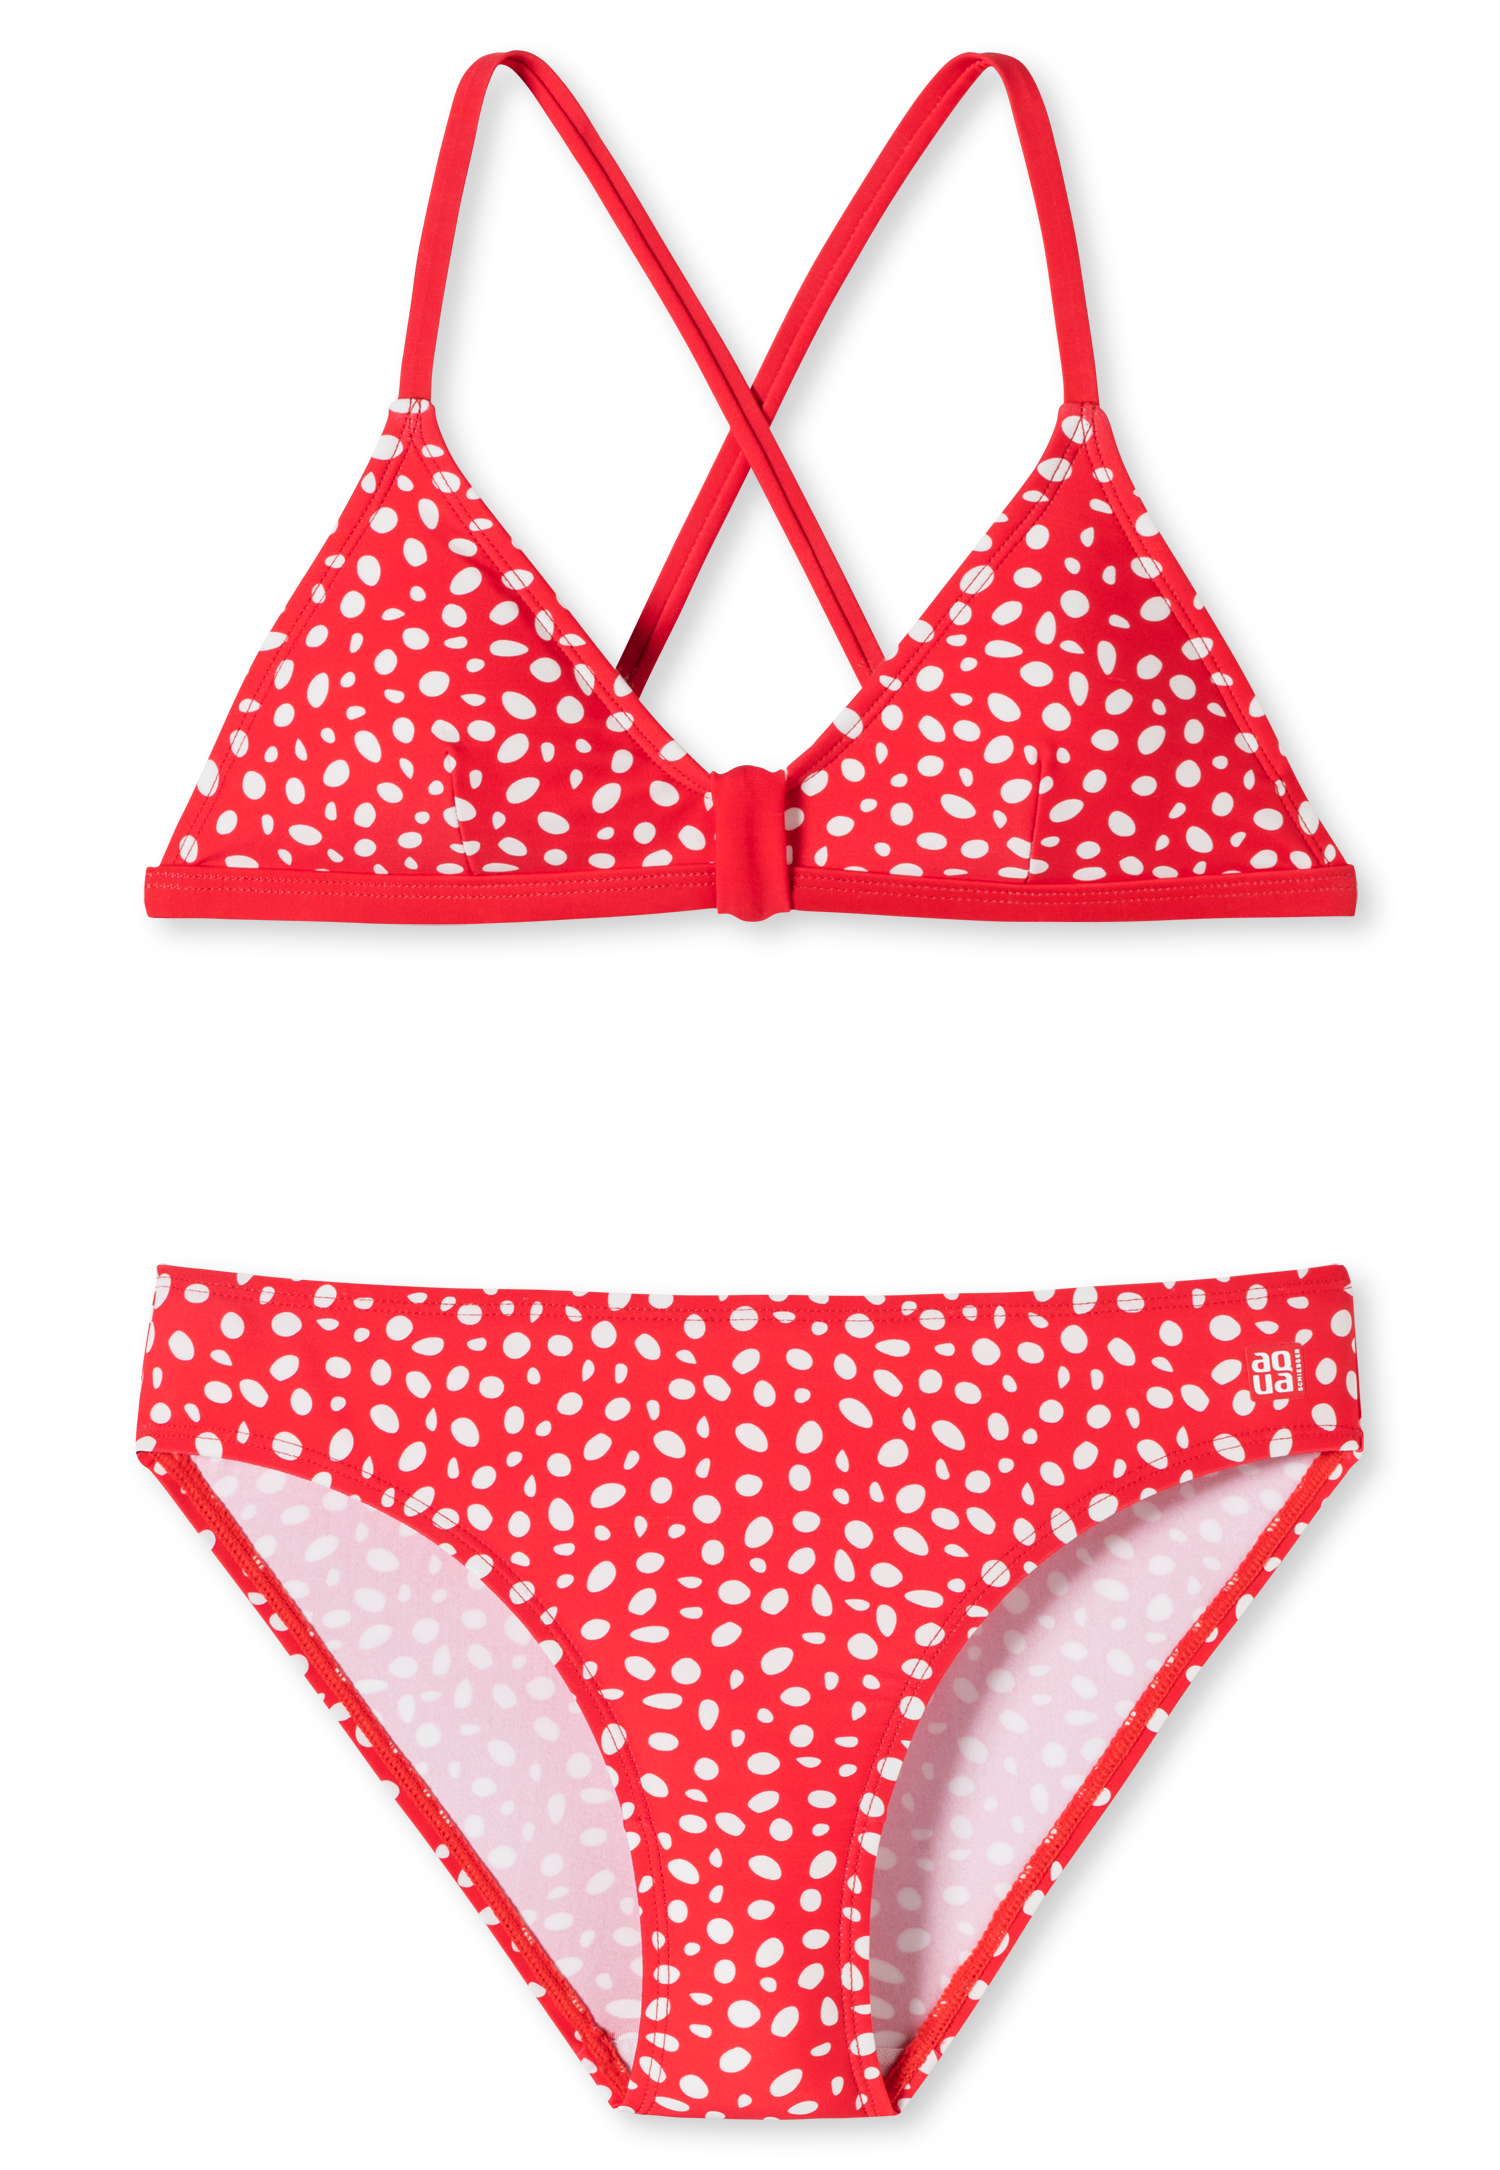 Schiesser Bustier-Bikini Wirkware recycelt LSF40+ Punkte rot - Diver Dreams für Mädchen